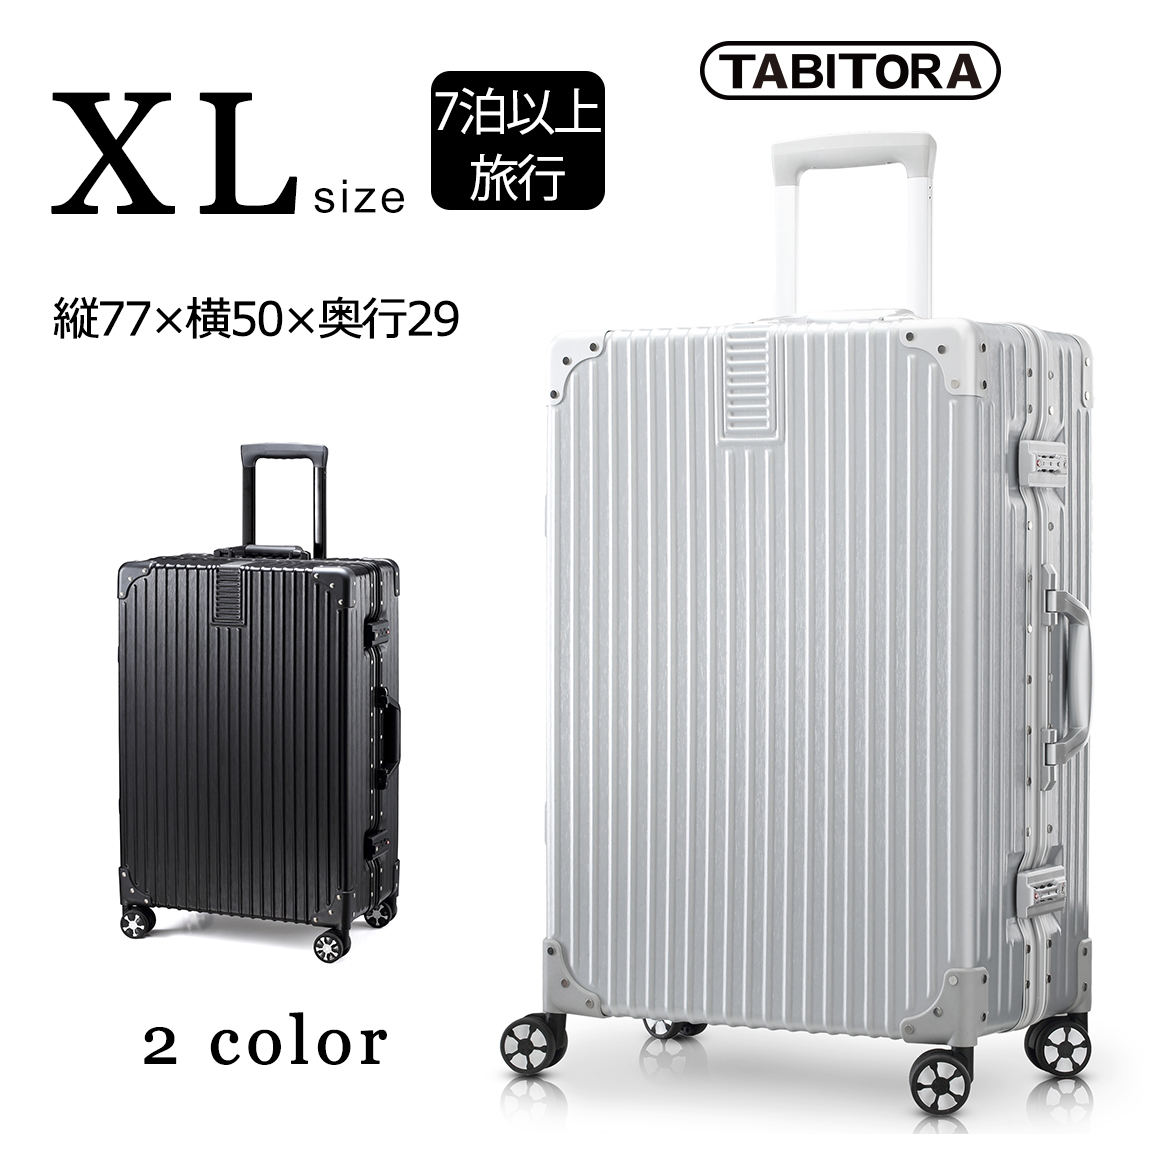  送料無料 TABITORA(タビトラ) スーツケース キャリーケース アルミフレーム 大型 レトロ 四角 静音 TSAロック 傷が目たちにくい （2色5サイズ対応）60180-XL